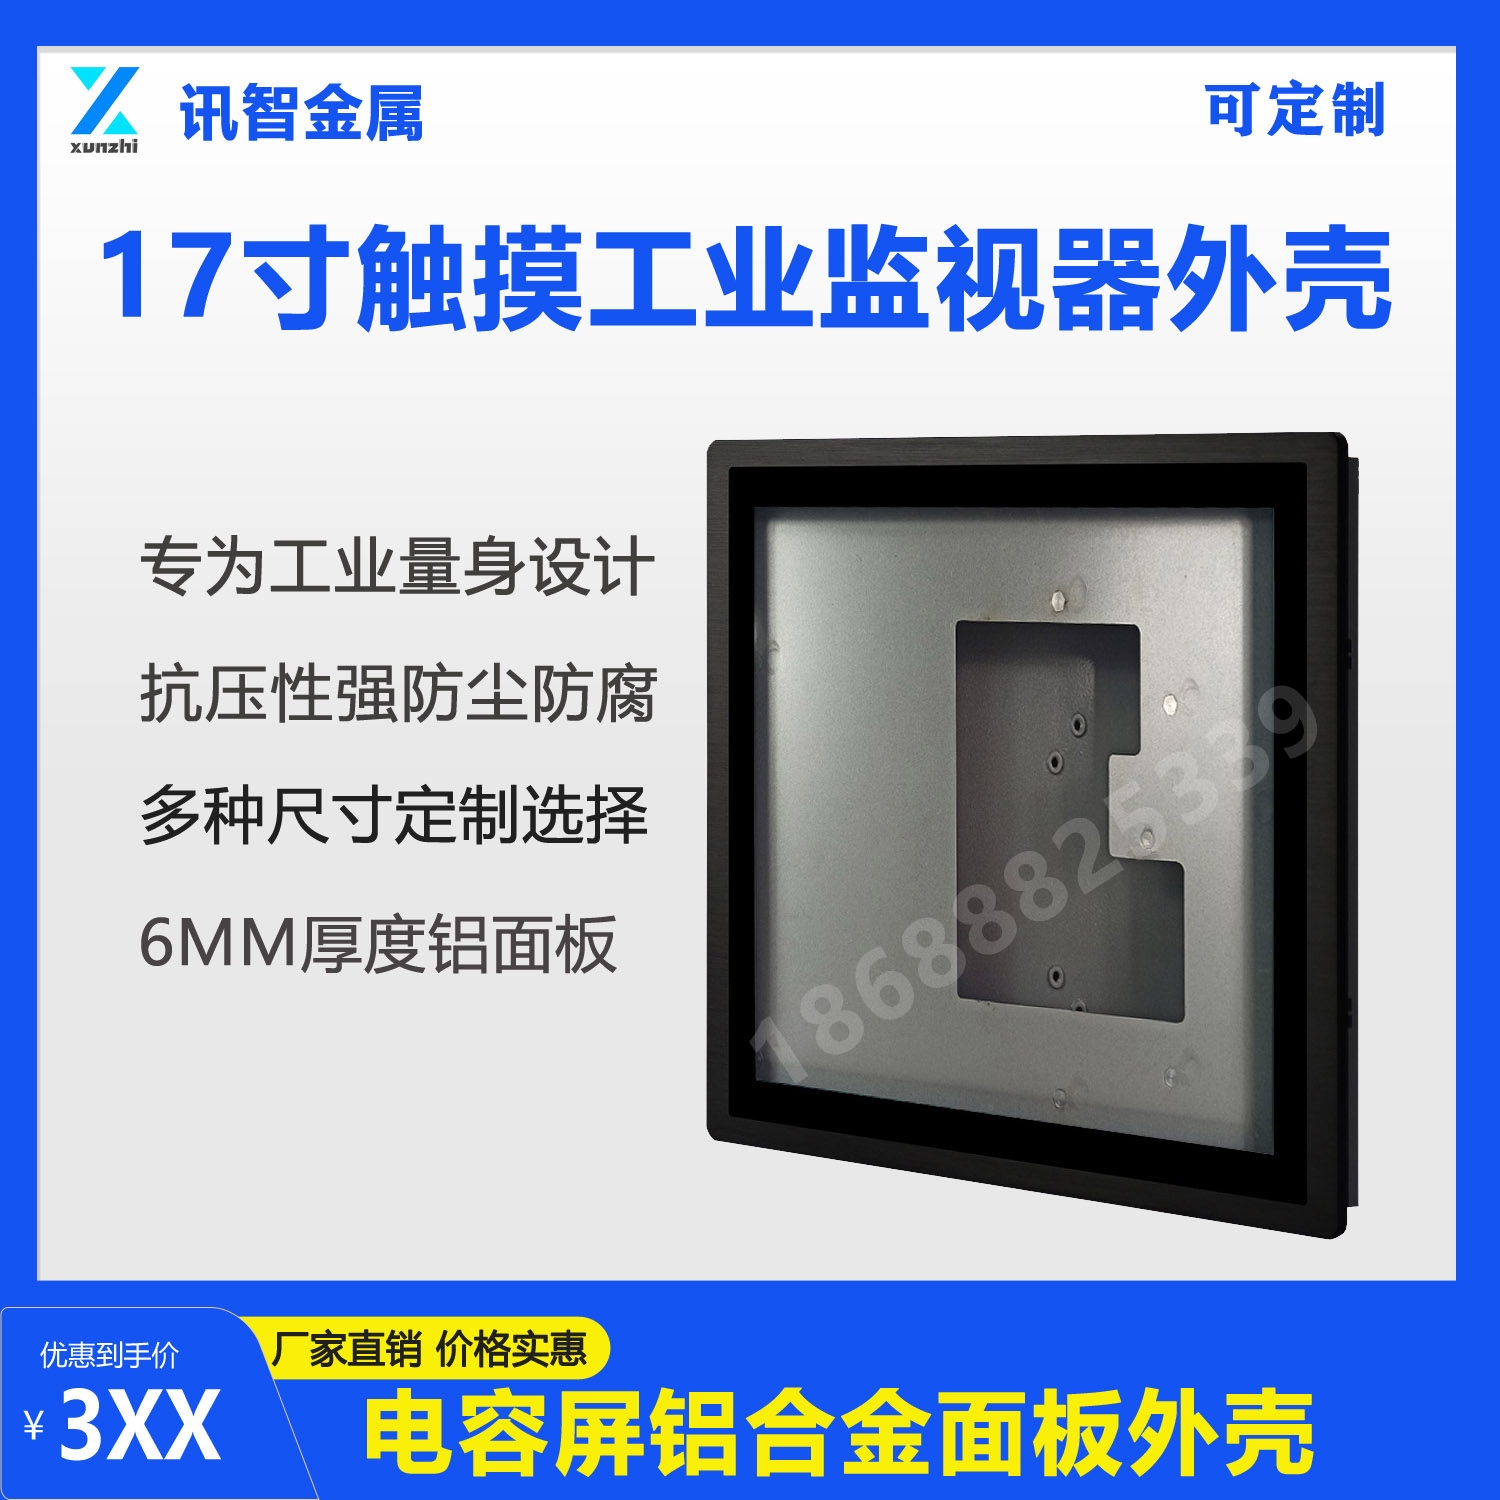 17寸電容工業顯示器工業觸摸觸控屏外殼機箱